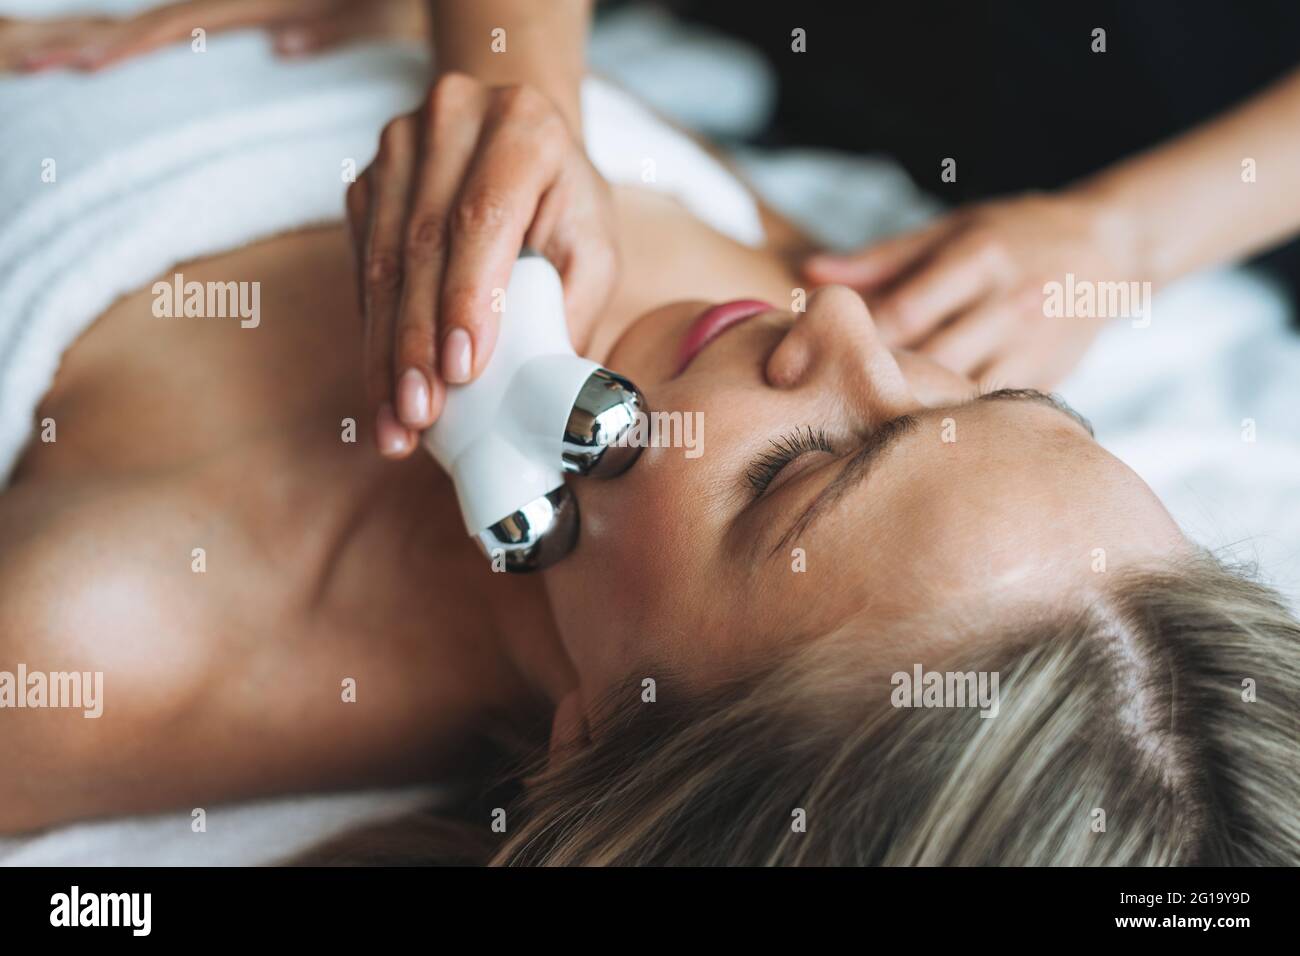 La giovane donna bionda ama il massaggio viso con un massaggiatore viso microcorrente nel centro benessere, concediti un po' di relax. Cura professionale del corpo Foto Stock